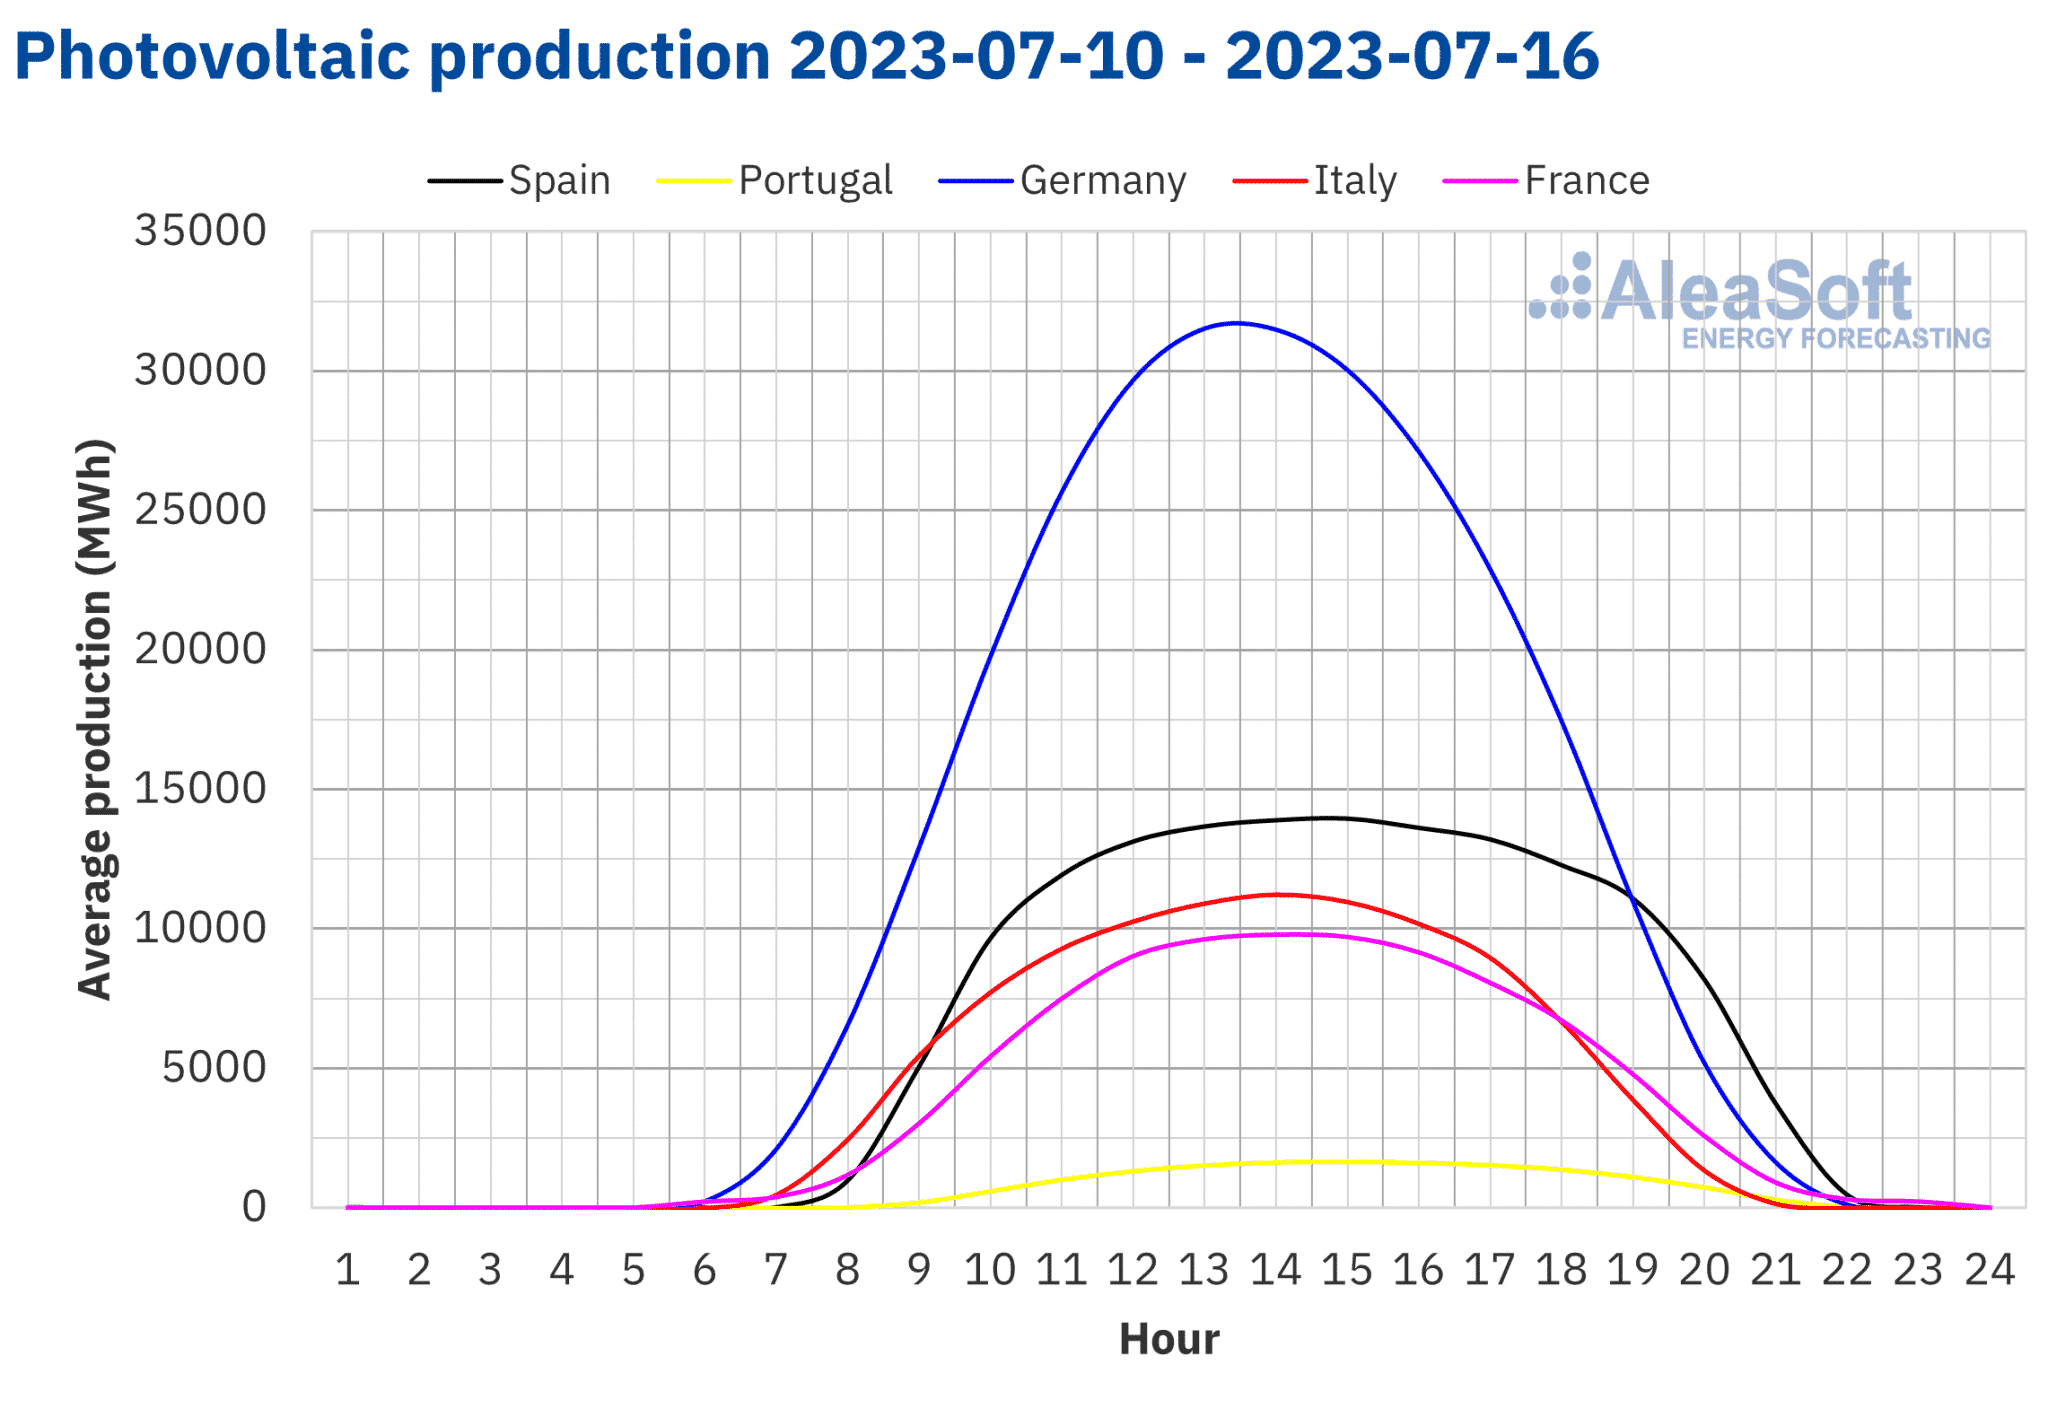 AleaSoft - Perfil de producción solar fotovoltaica Europa